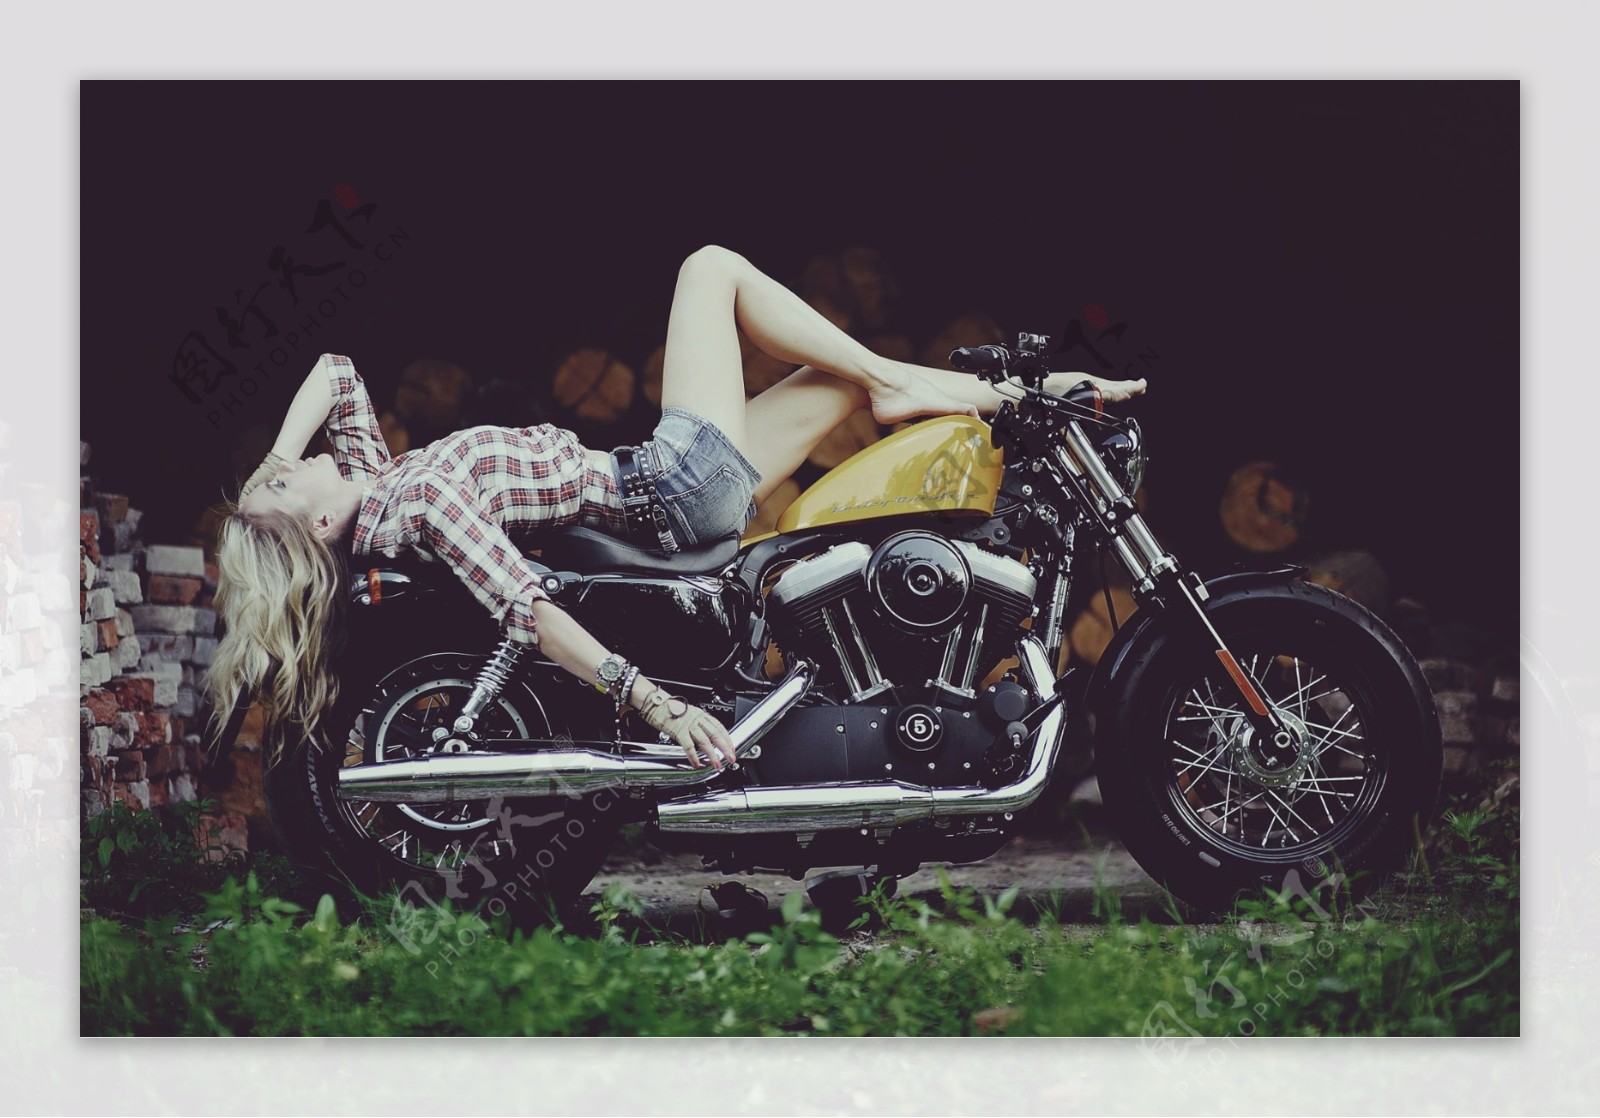 躺在摩托车上的美女